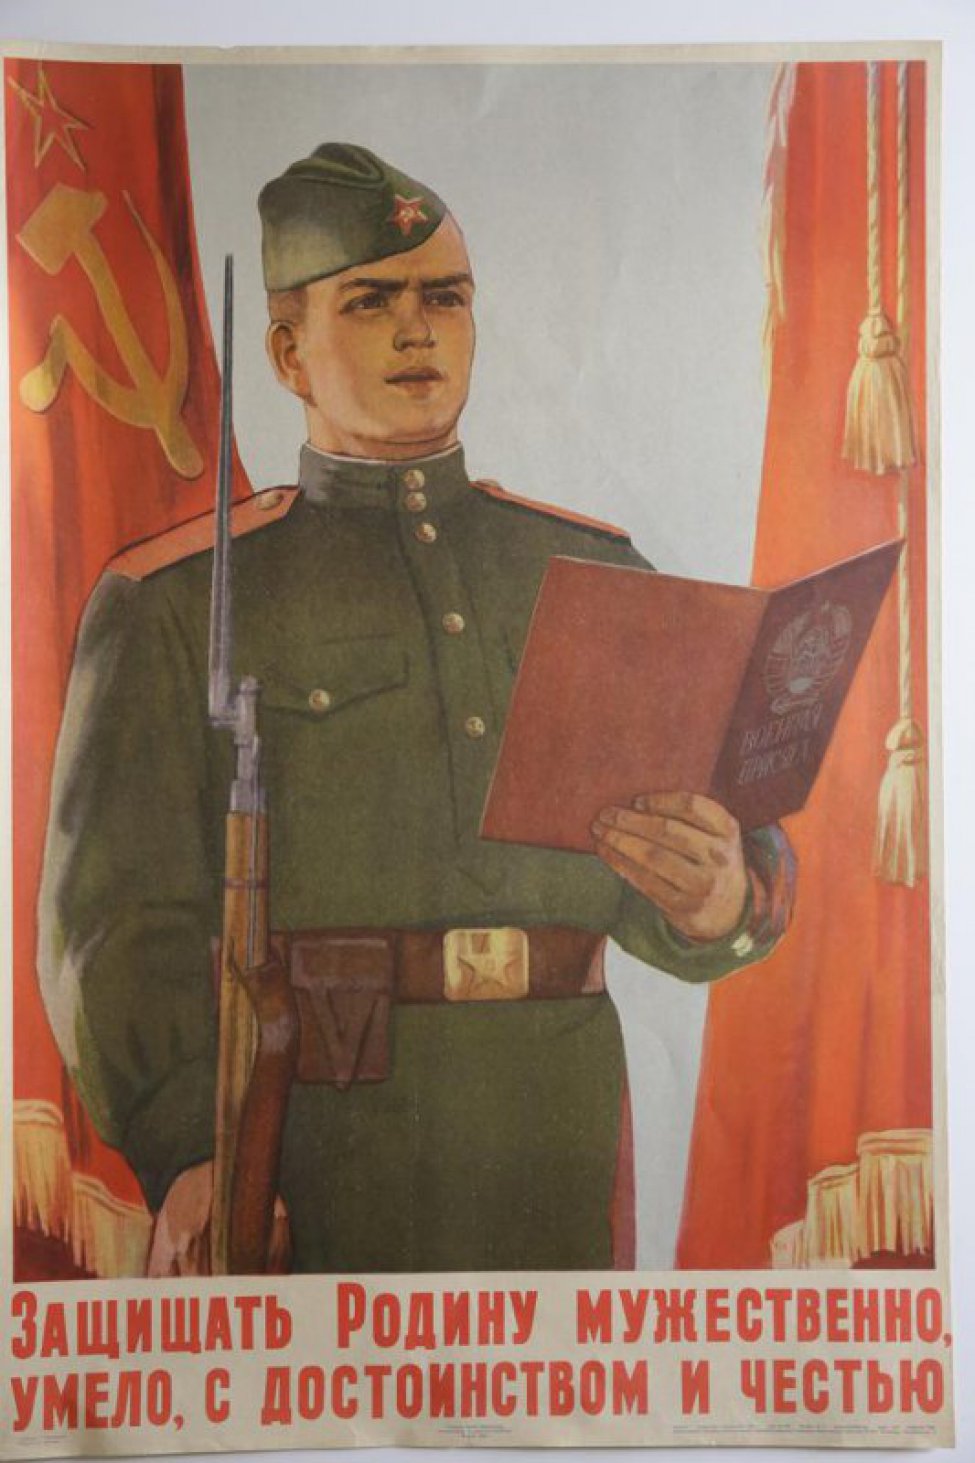 Изображен молодой солдат с винтовкой в правой руке; в левой руке он держит текст  воинской присяги. Под изображением надпись.